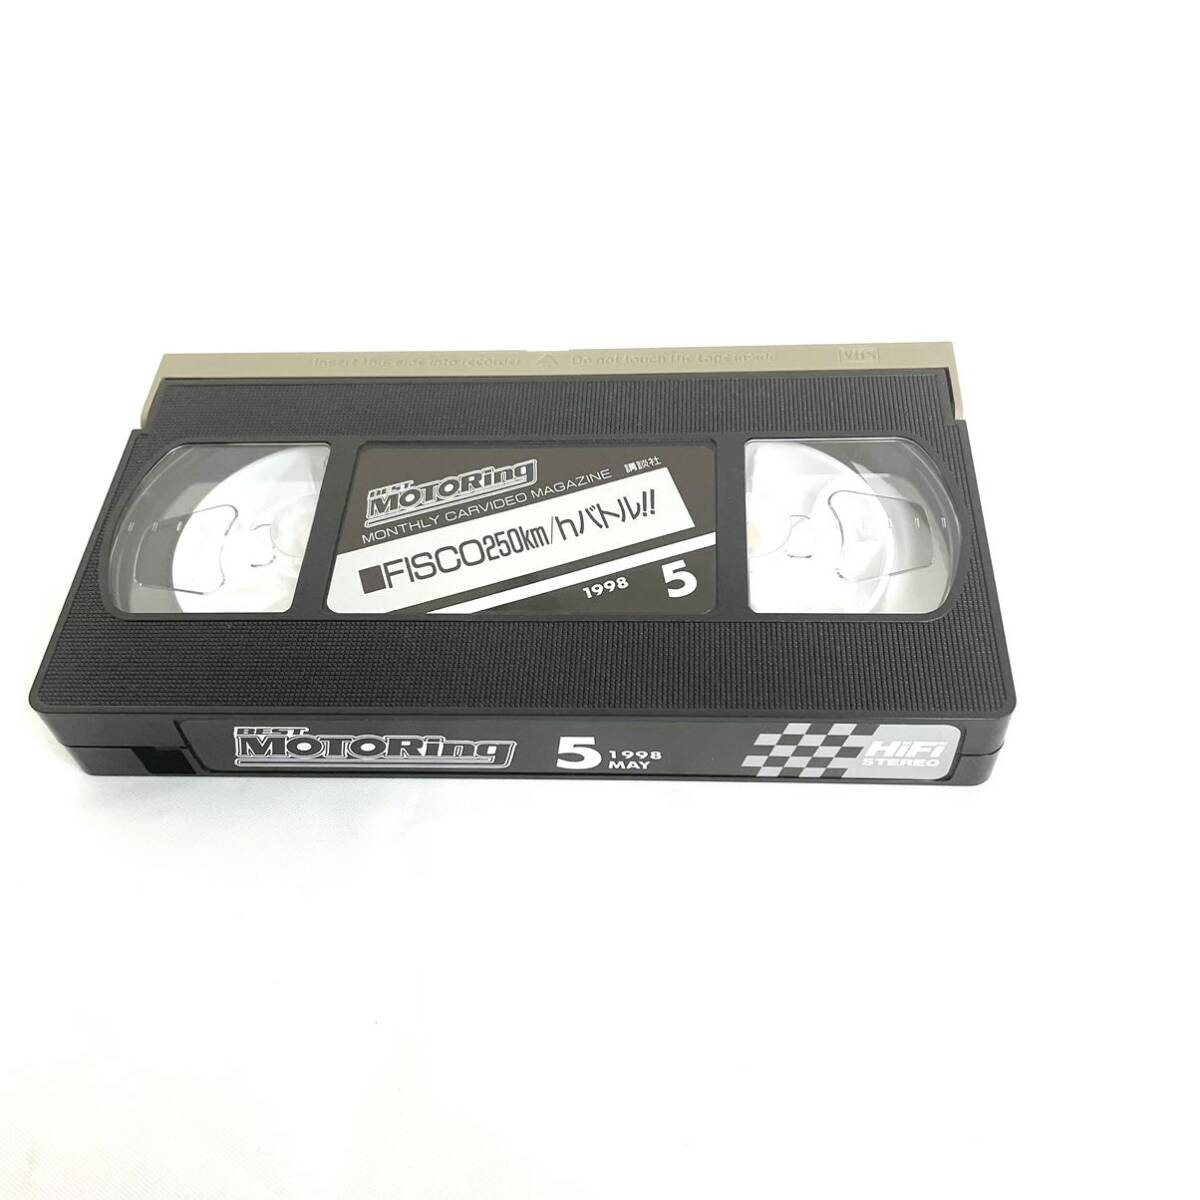 F04191 VHS видео распродажа специальный товар BEST MOTORing Best Motoring 1998 год 5 месяц номер 60 минут Fuji скорость way супер высокая скорость Battle!!.. фирма 